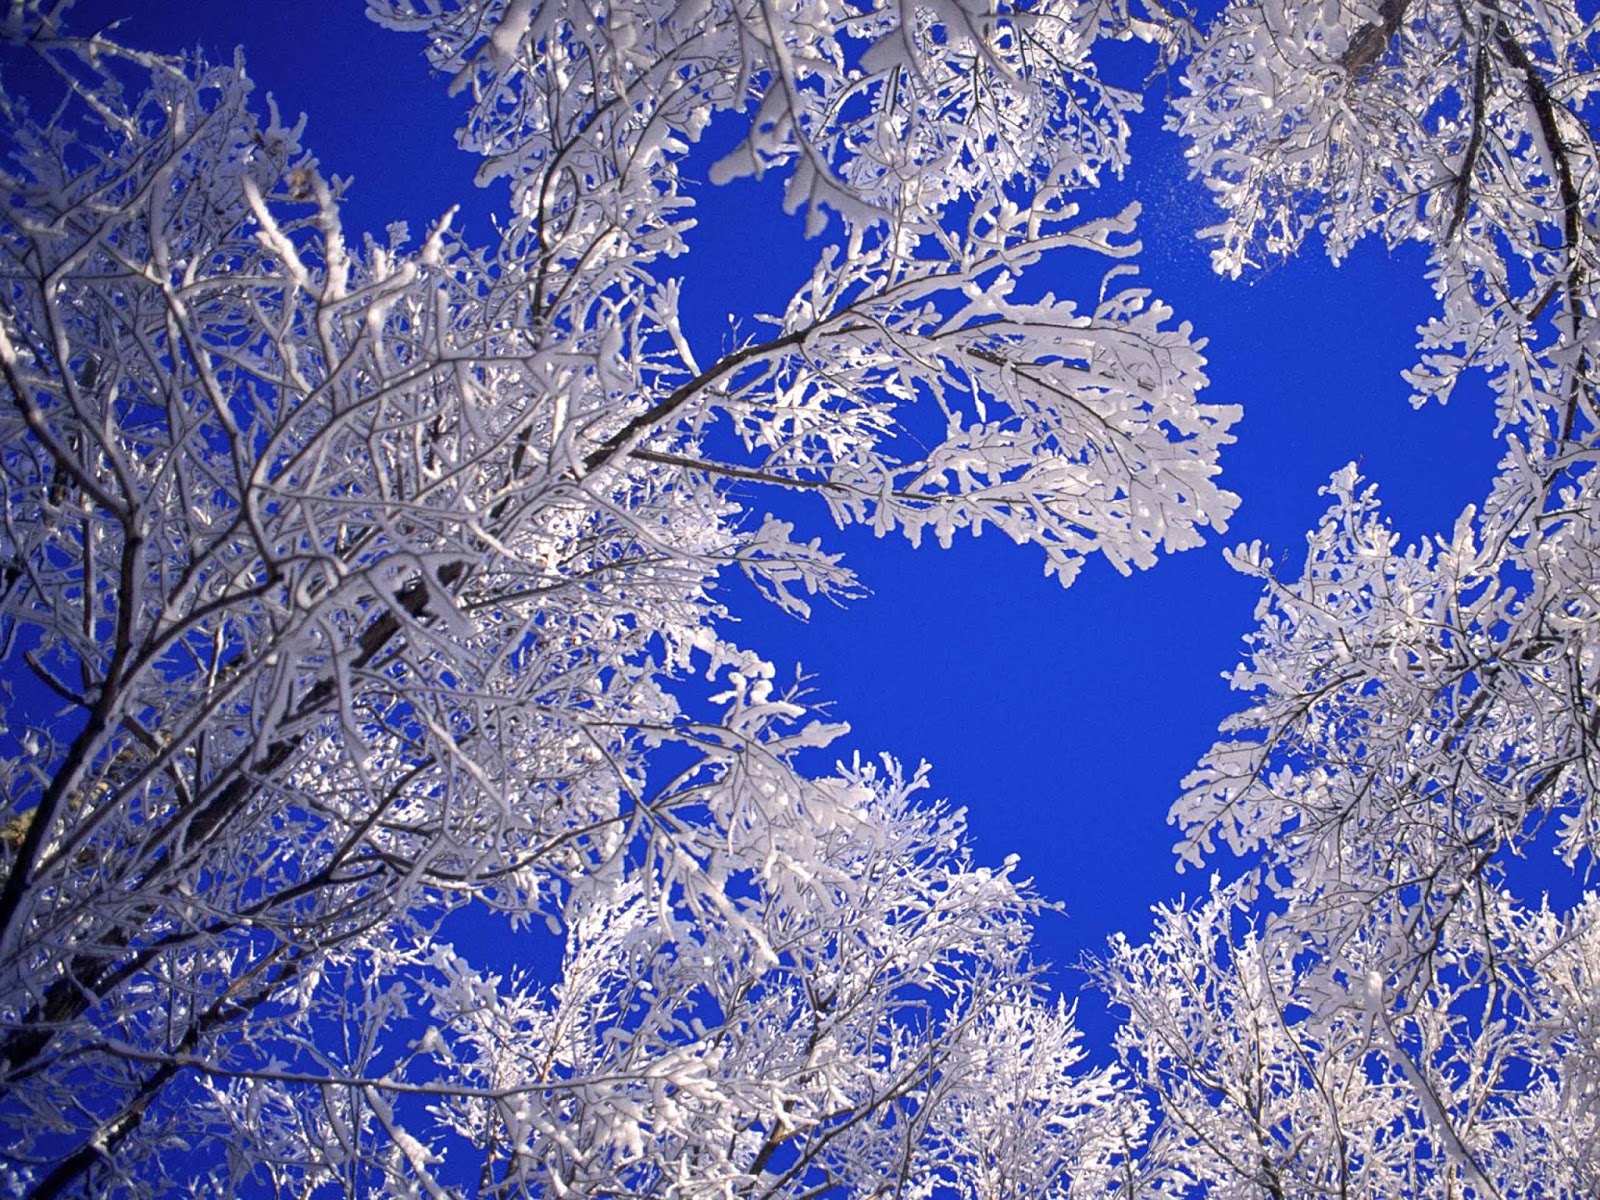 HD Wallpapers Winter Scenes for Desktop 1600x1200